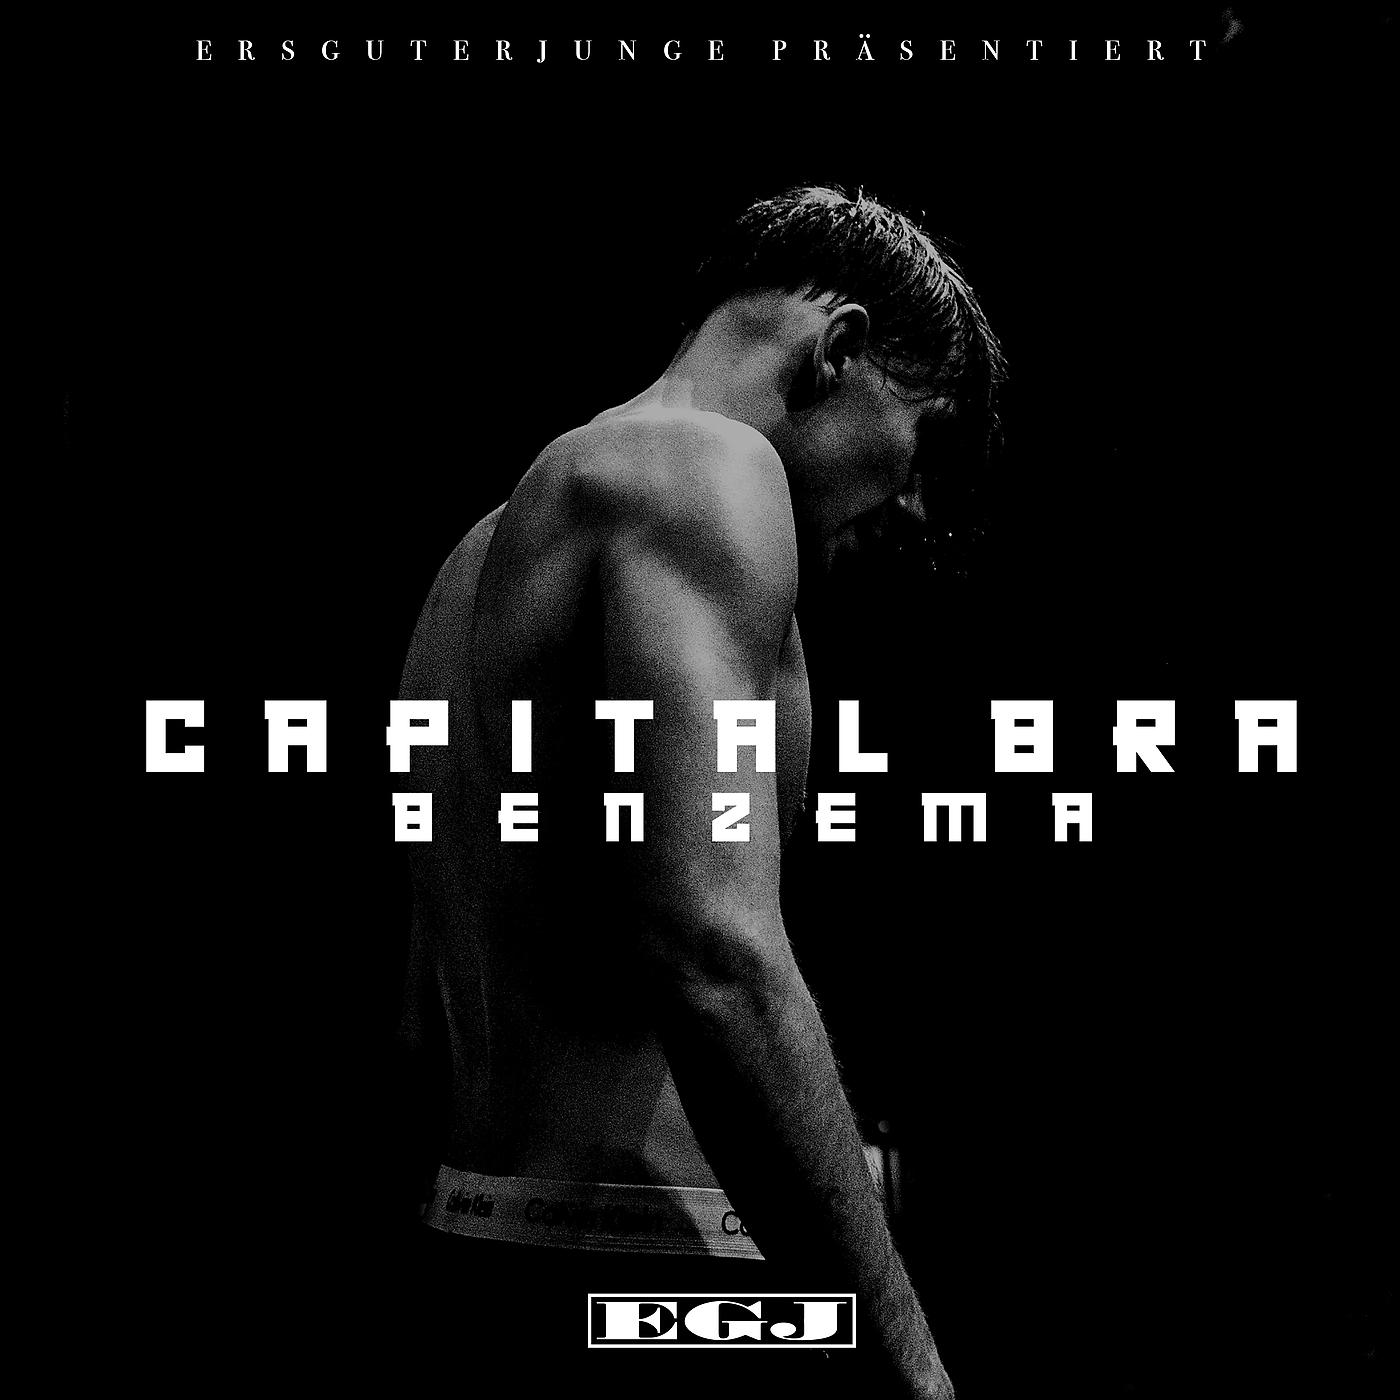 Постер альбома Benzema